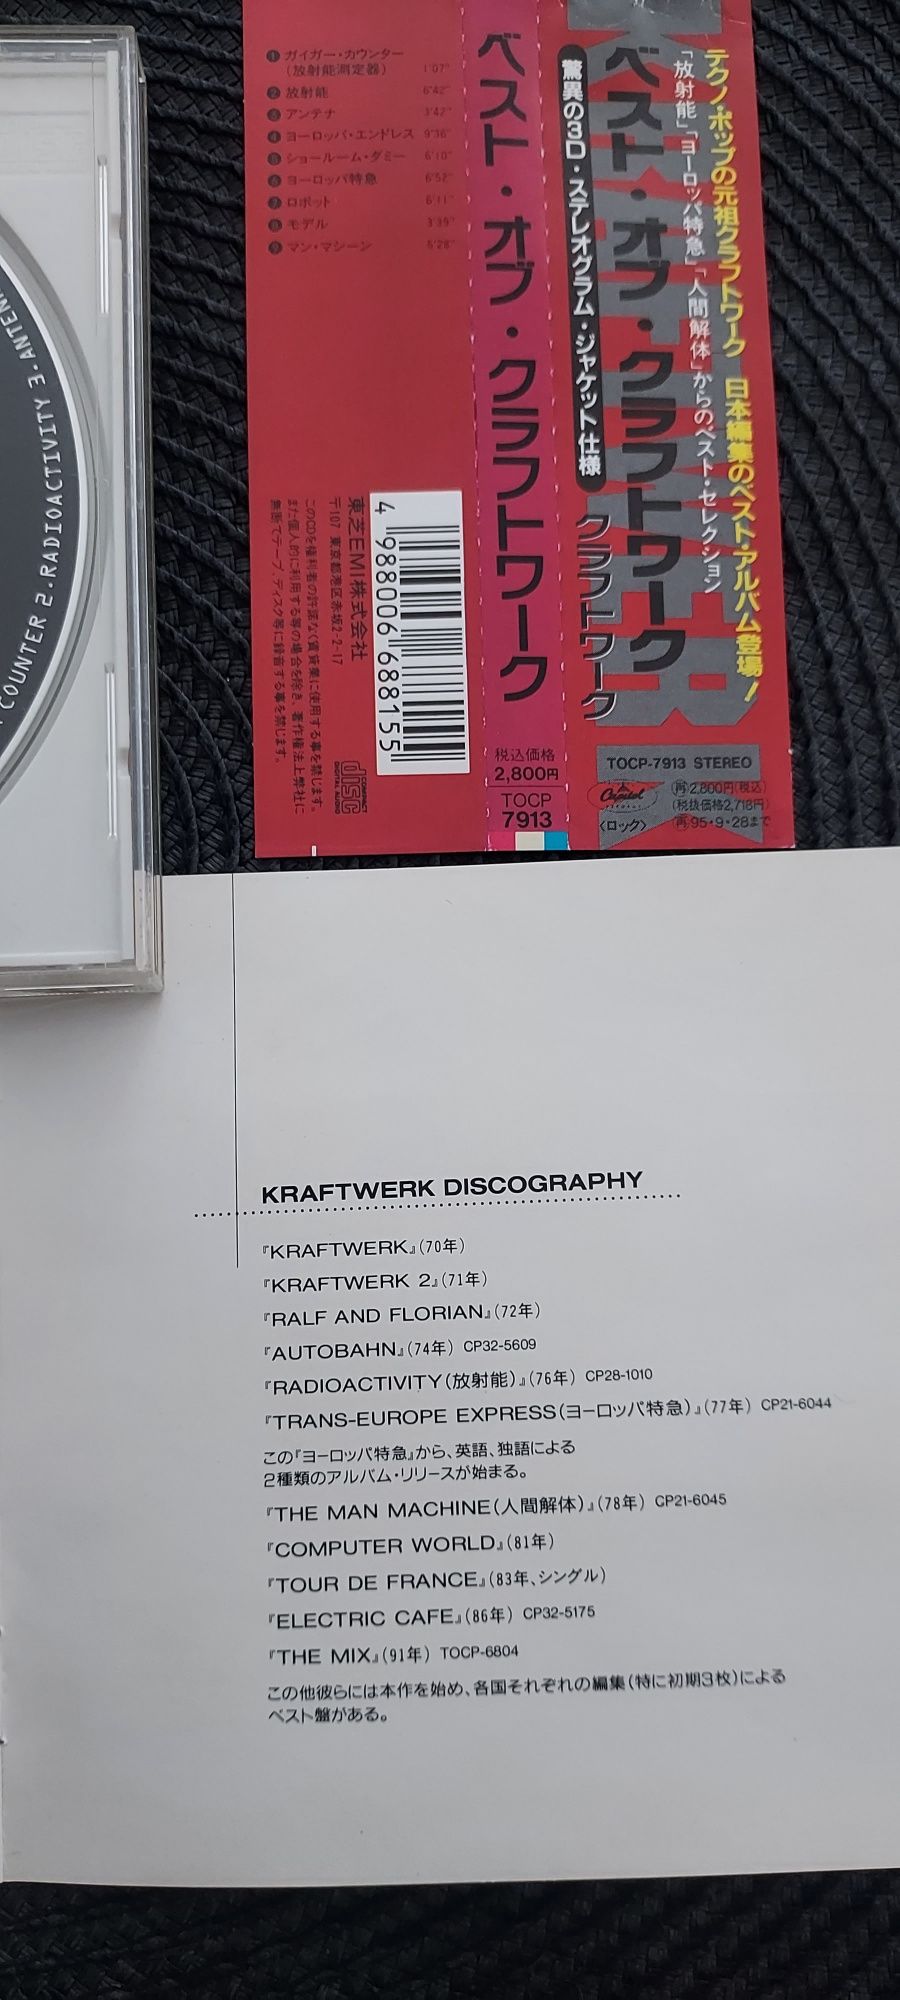 Kraftwerk The Best of kraftwerk japan/obi 1993r.